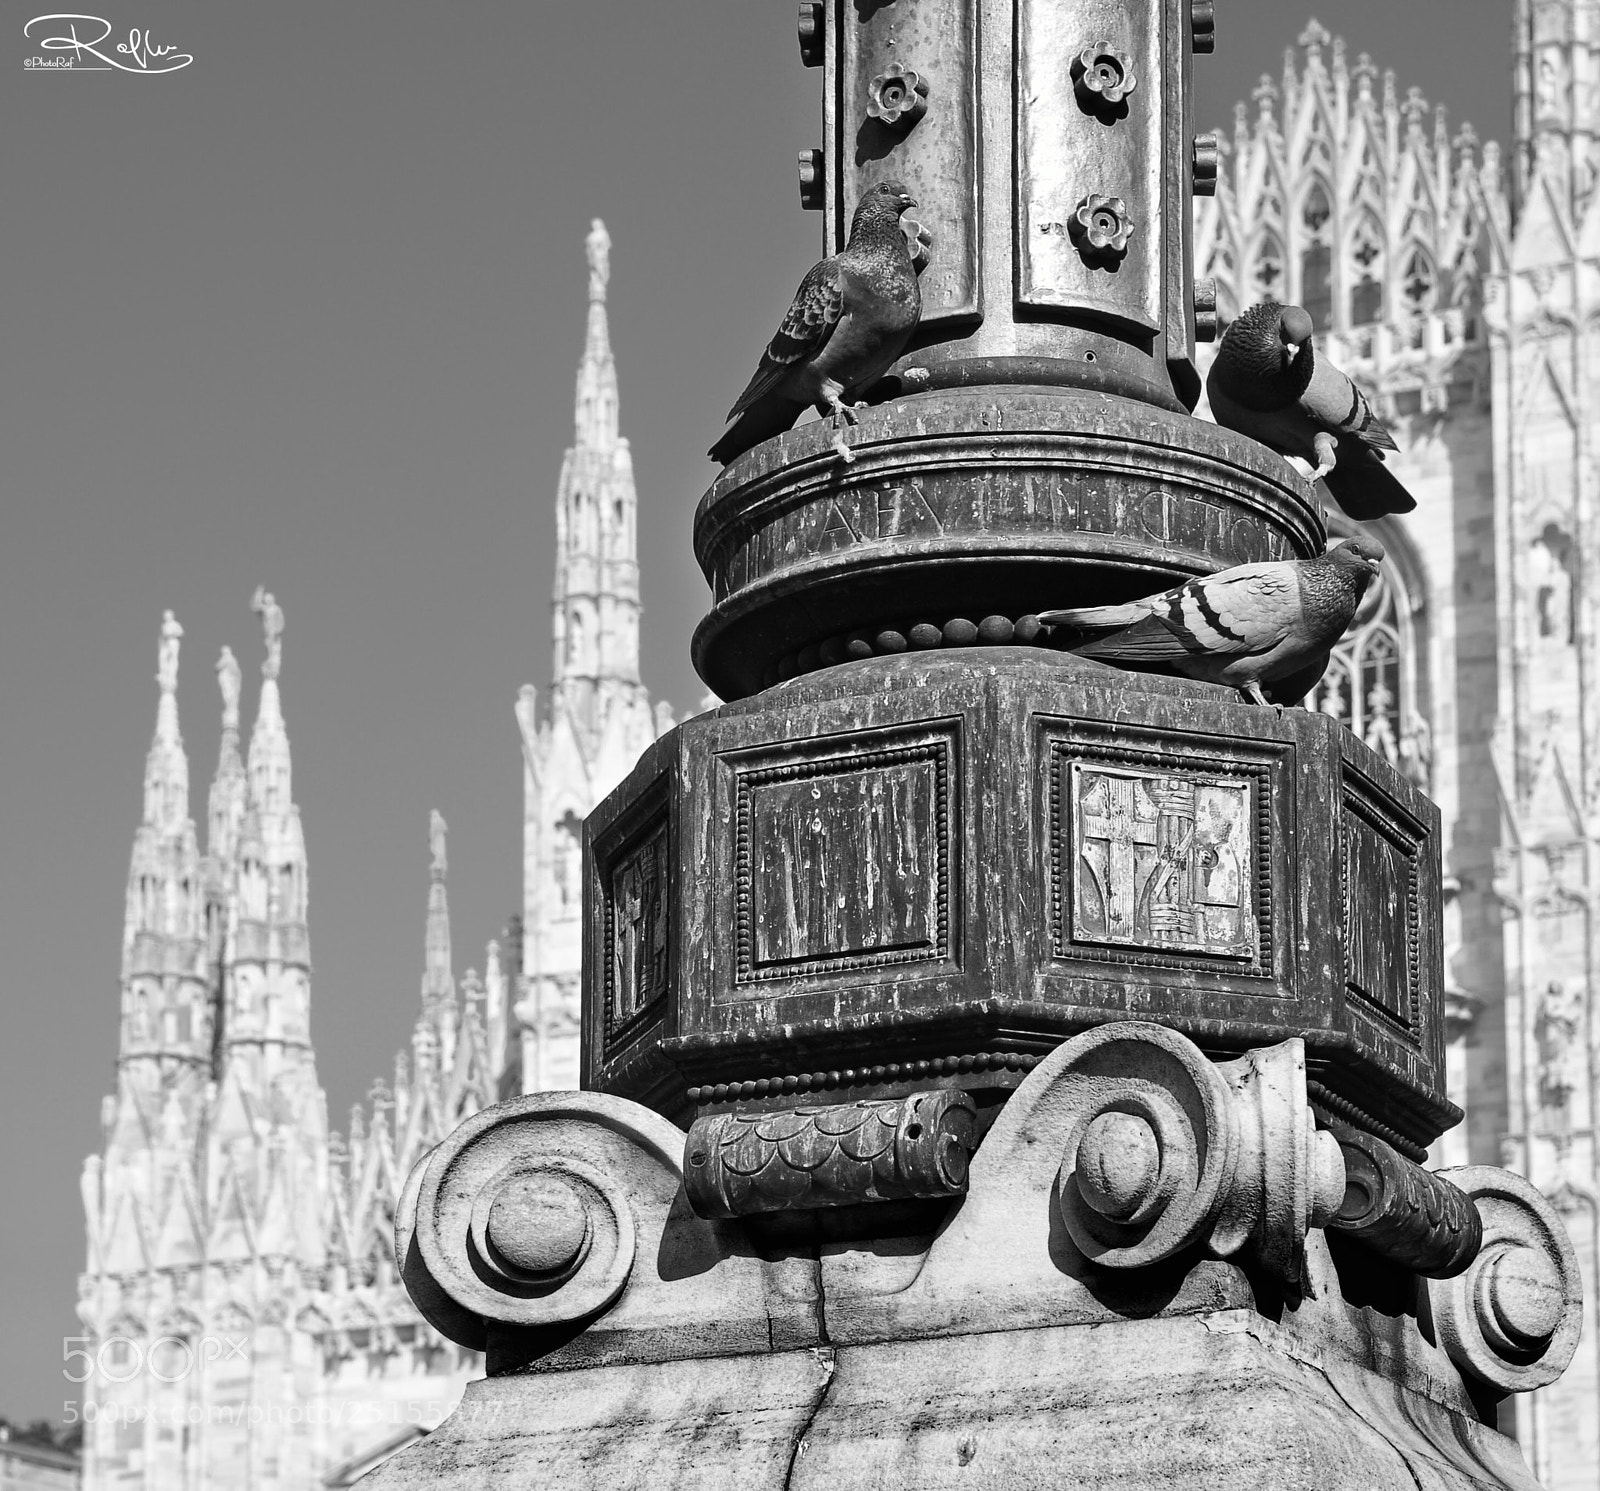 Nikon D3 sample photo. Duomo di milano photography